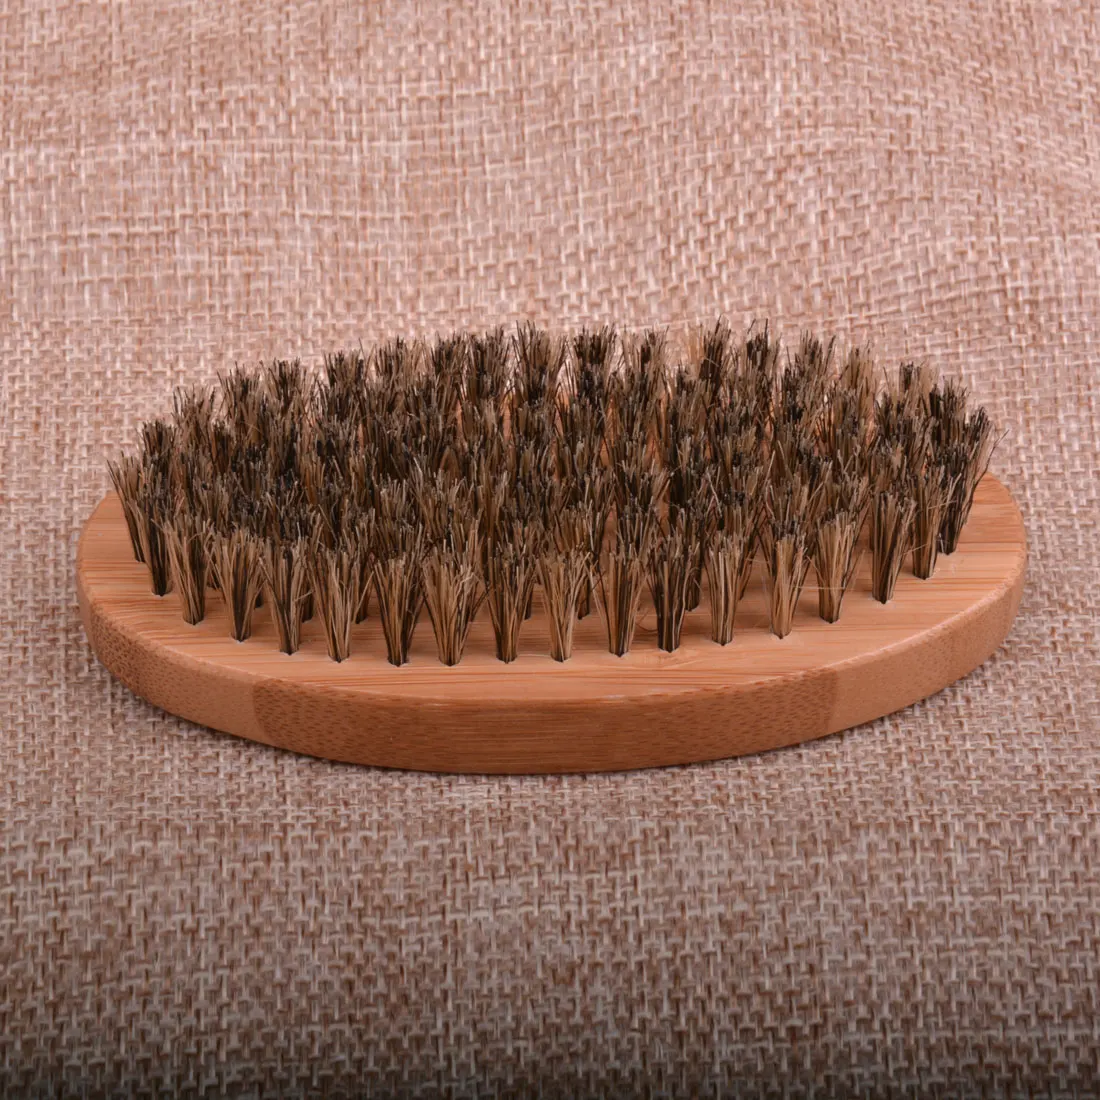 Для мужчин лица массаж лица волос бороды гребень бритья барсук щетка усы борода кисти натуральная щетина кабана деревянная круглая ручка